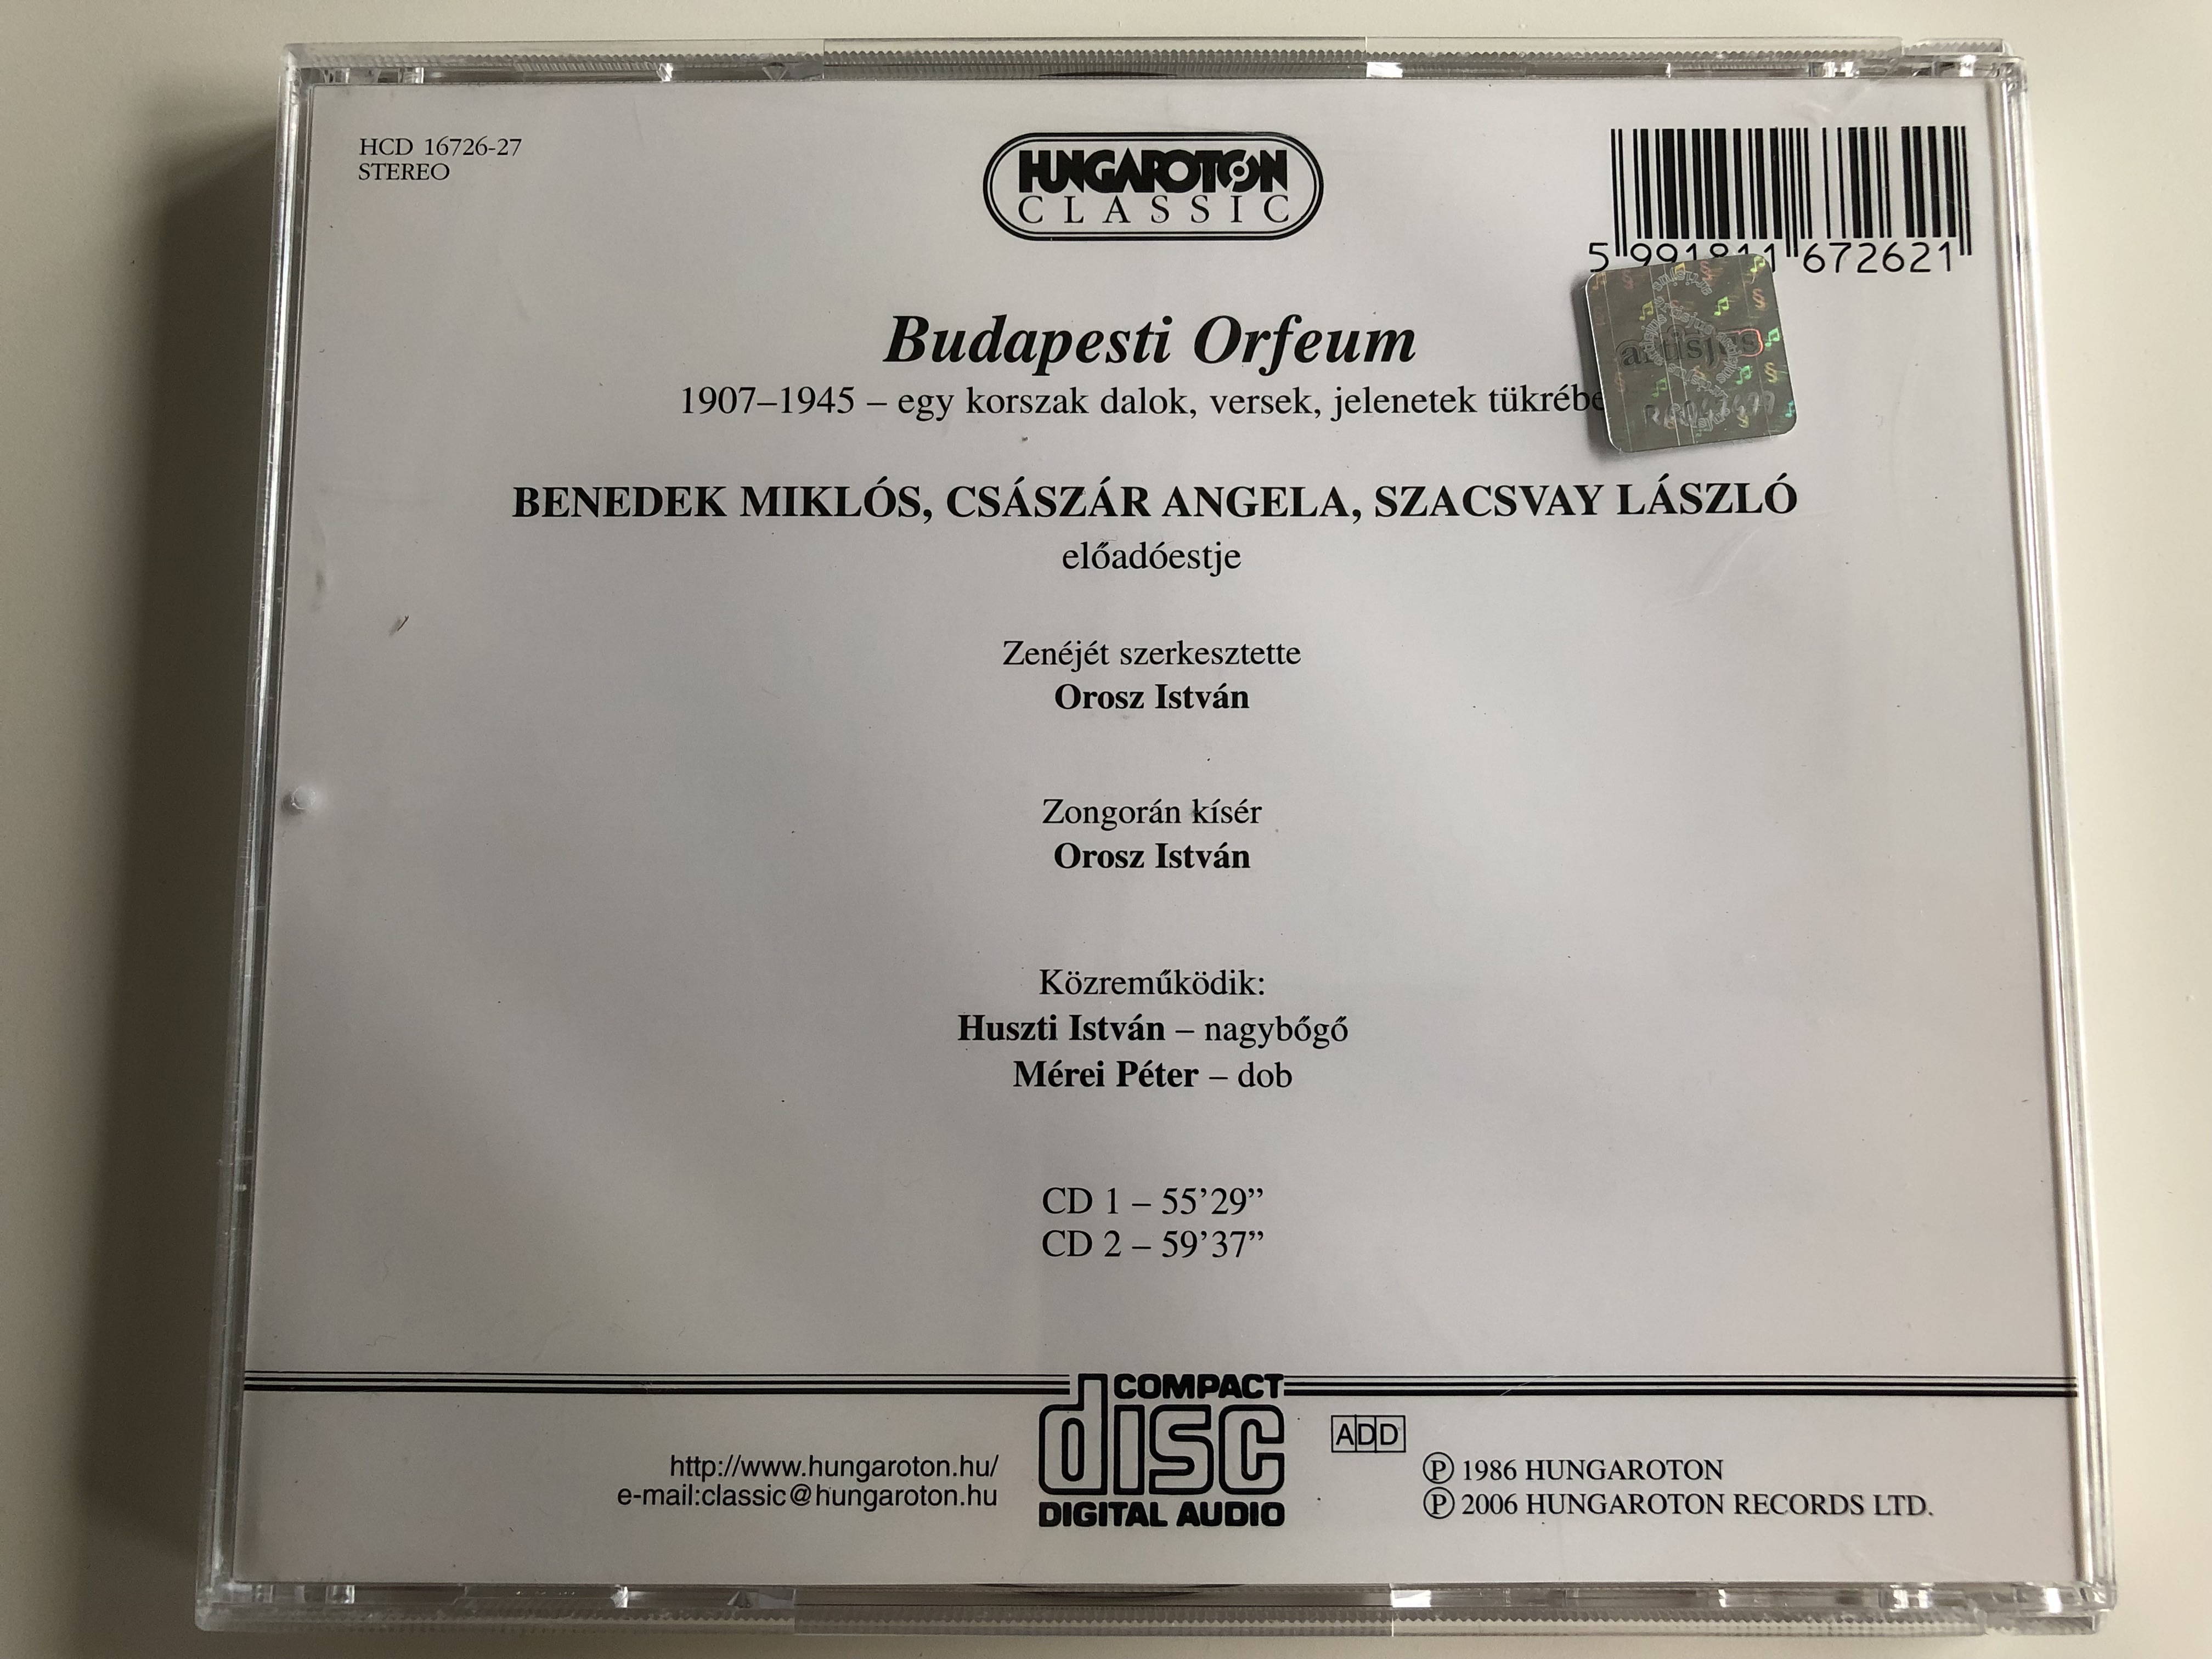 budapest-orfeum-szacsvay-l-szl-cs-sz-r-ang-la-benedek-mikl-s-hungaroton-classic-audio-cd-2006-hcd-16726-27-8-.jpg